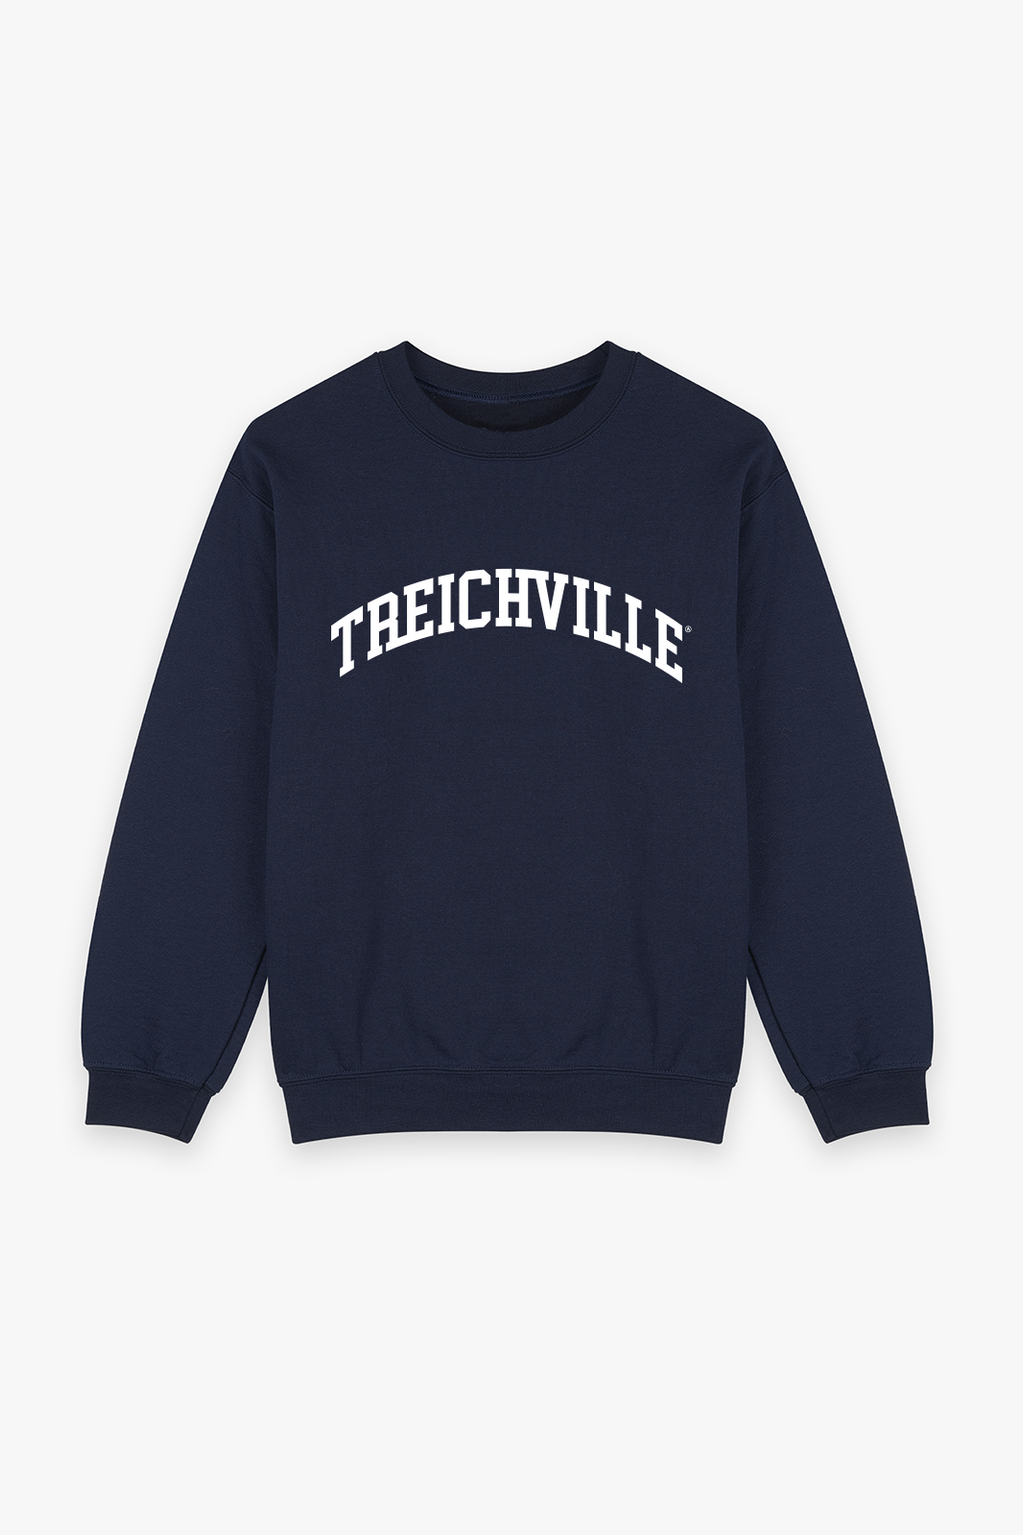 Treichville Sweatshirt Navy